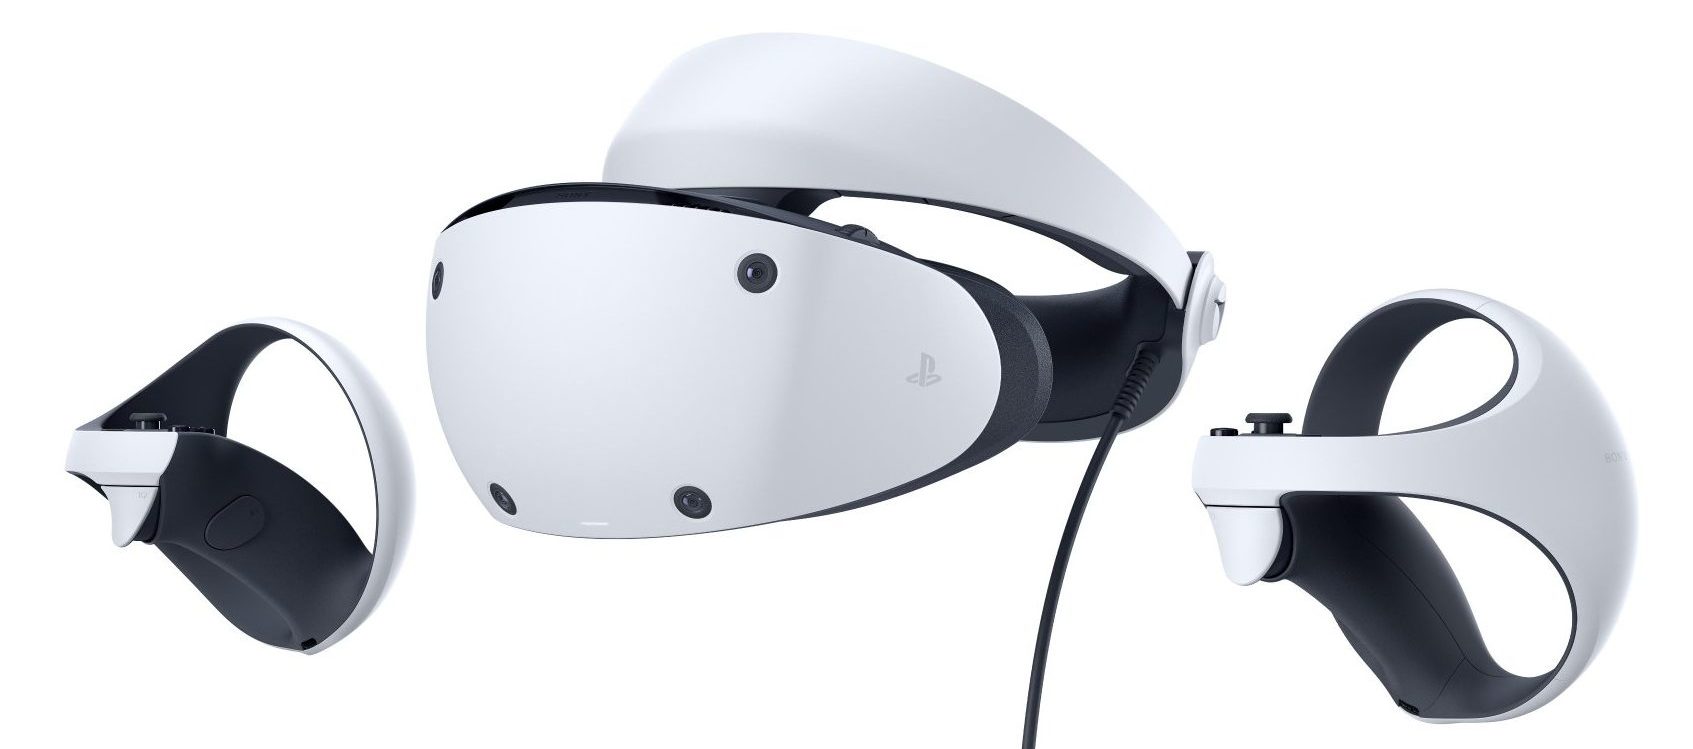 Végre kiderült, hogy néz ki a PlayStation VR 2